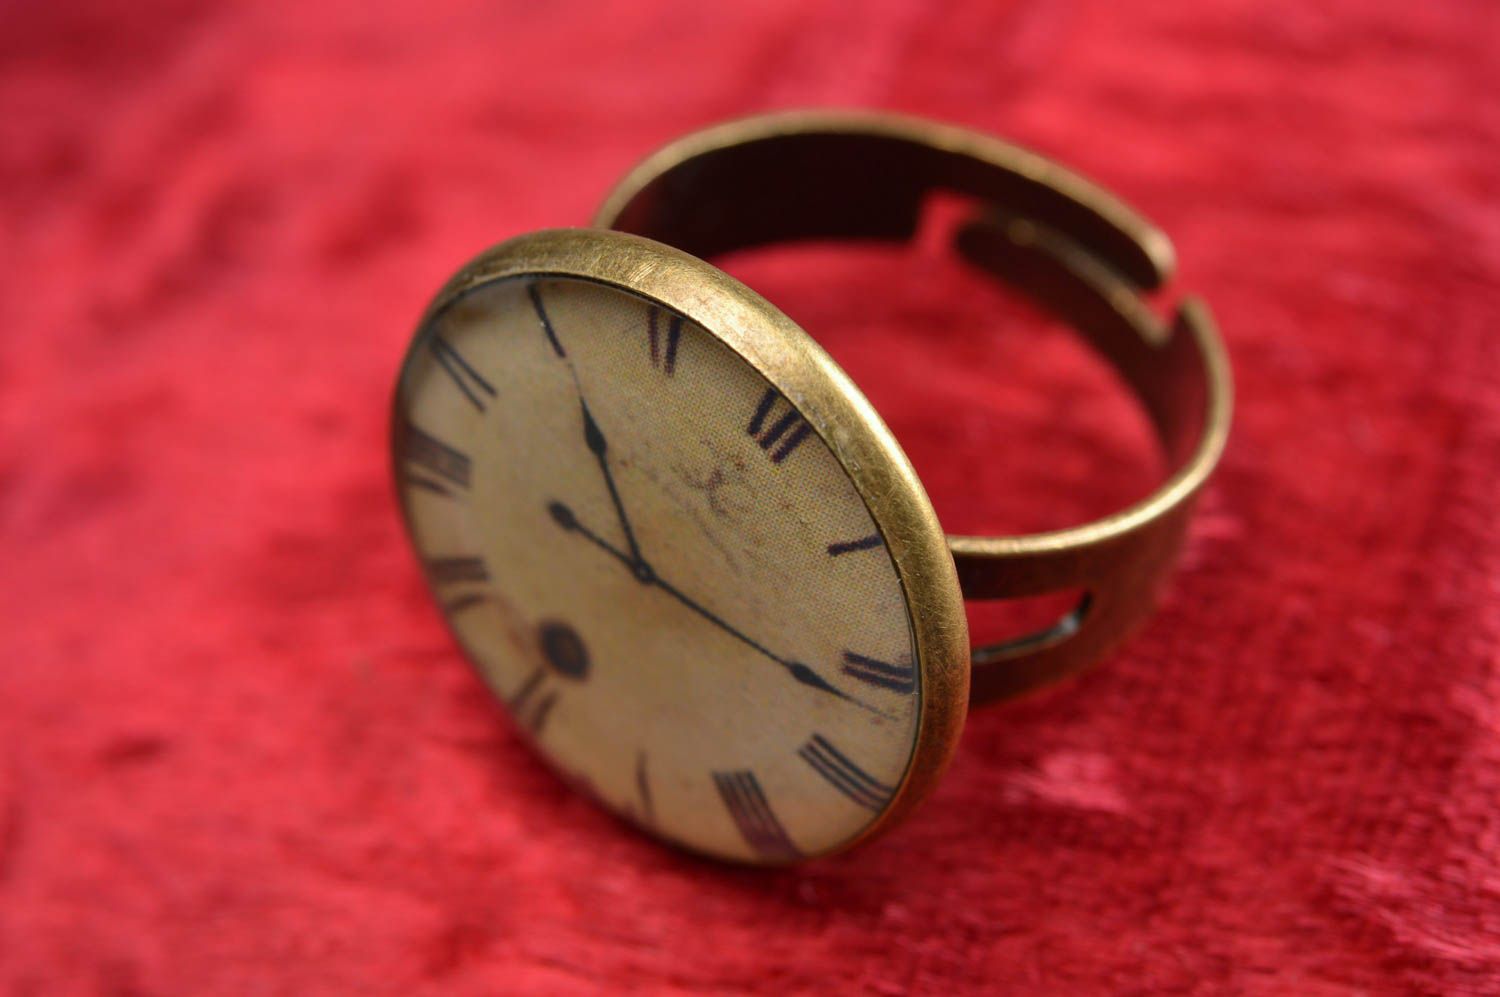 Bague ronde technique serviettage faite main originale vintage Horloge photo 1